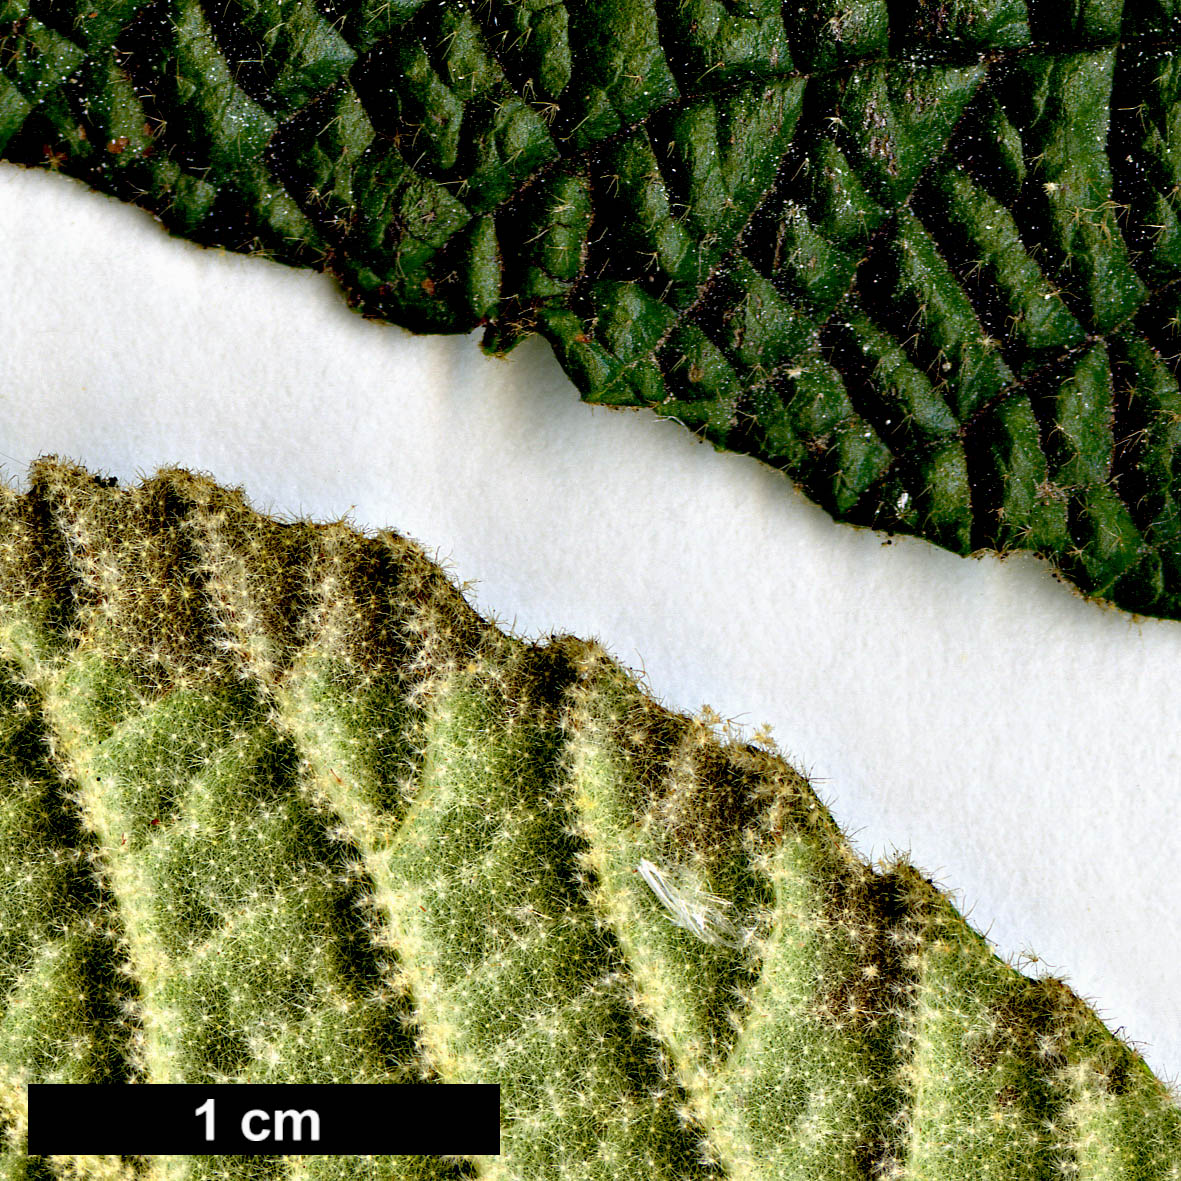 High resolution image: Family: Adoxaceae - Genus: Viburnum - Taxon: ×rhytidophylloides (V.lantana × V.rhytidophyllum)